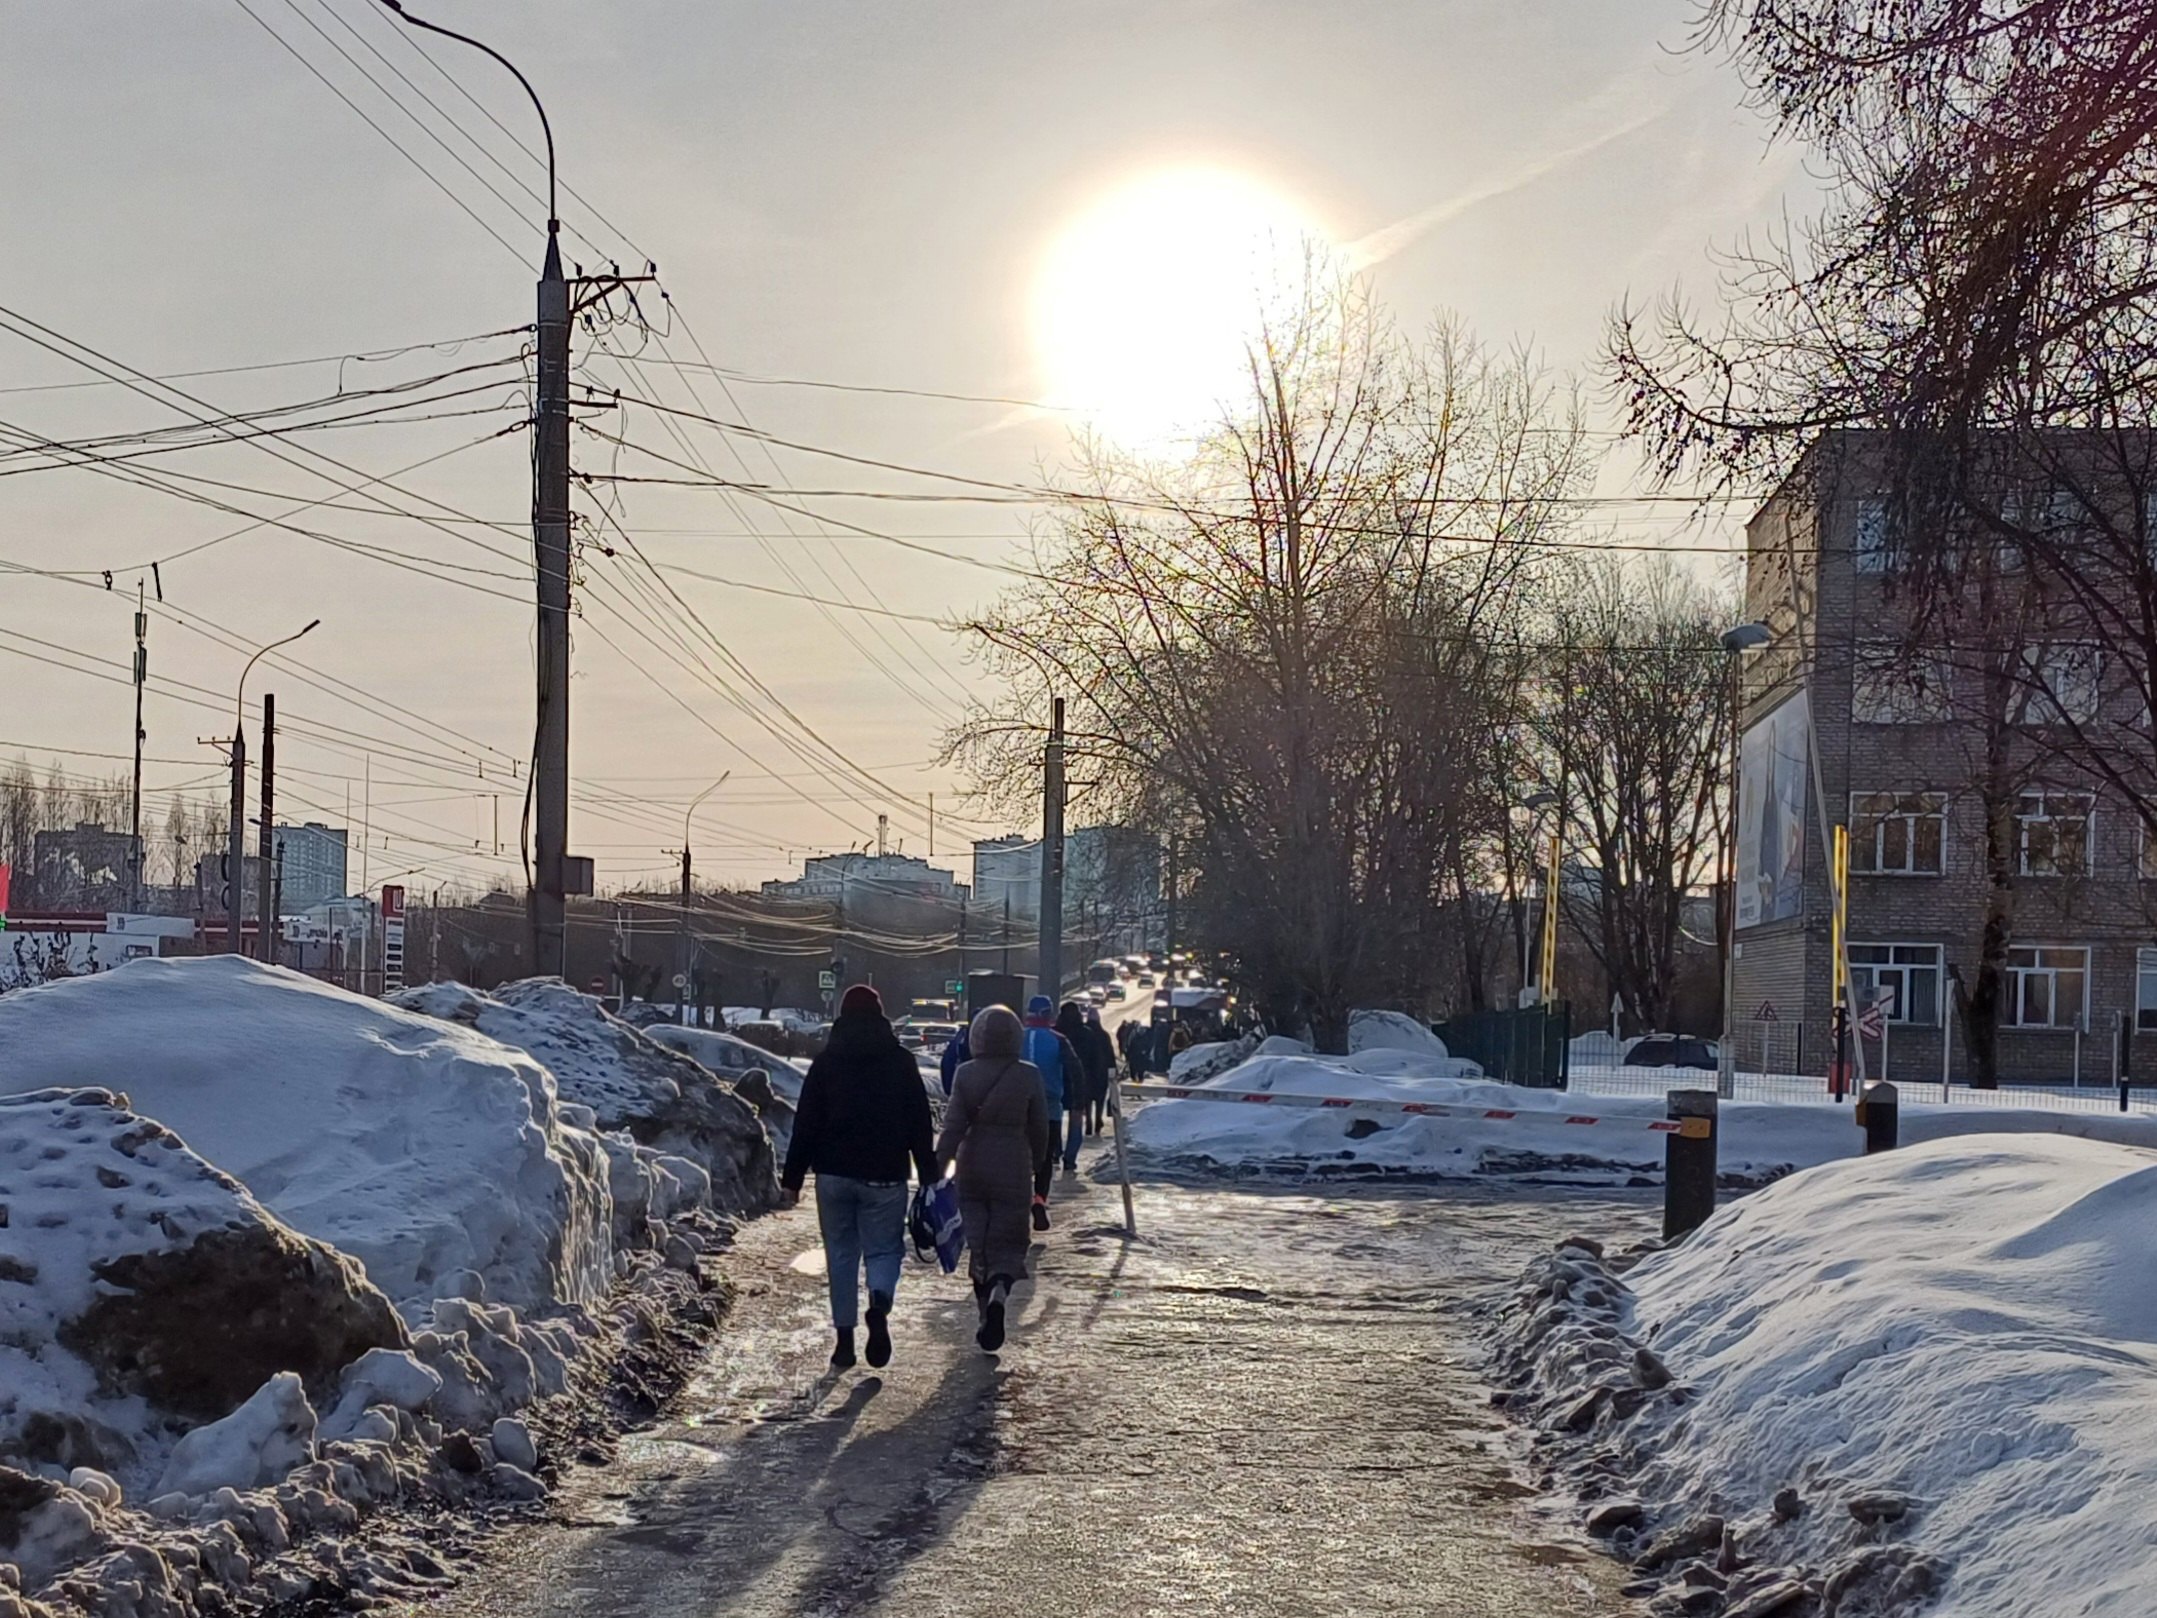 +6 градусов и без осадков: какой будет погода в Кирове в воскресенье, 17 марта?